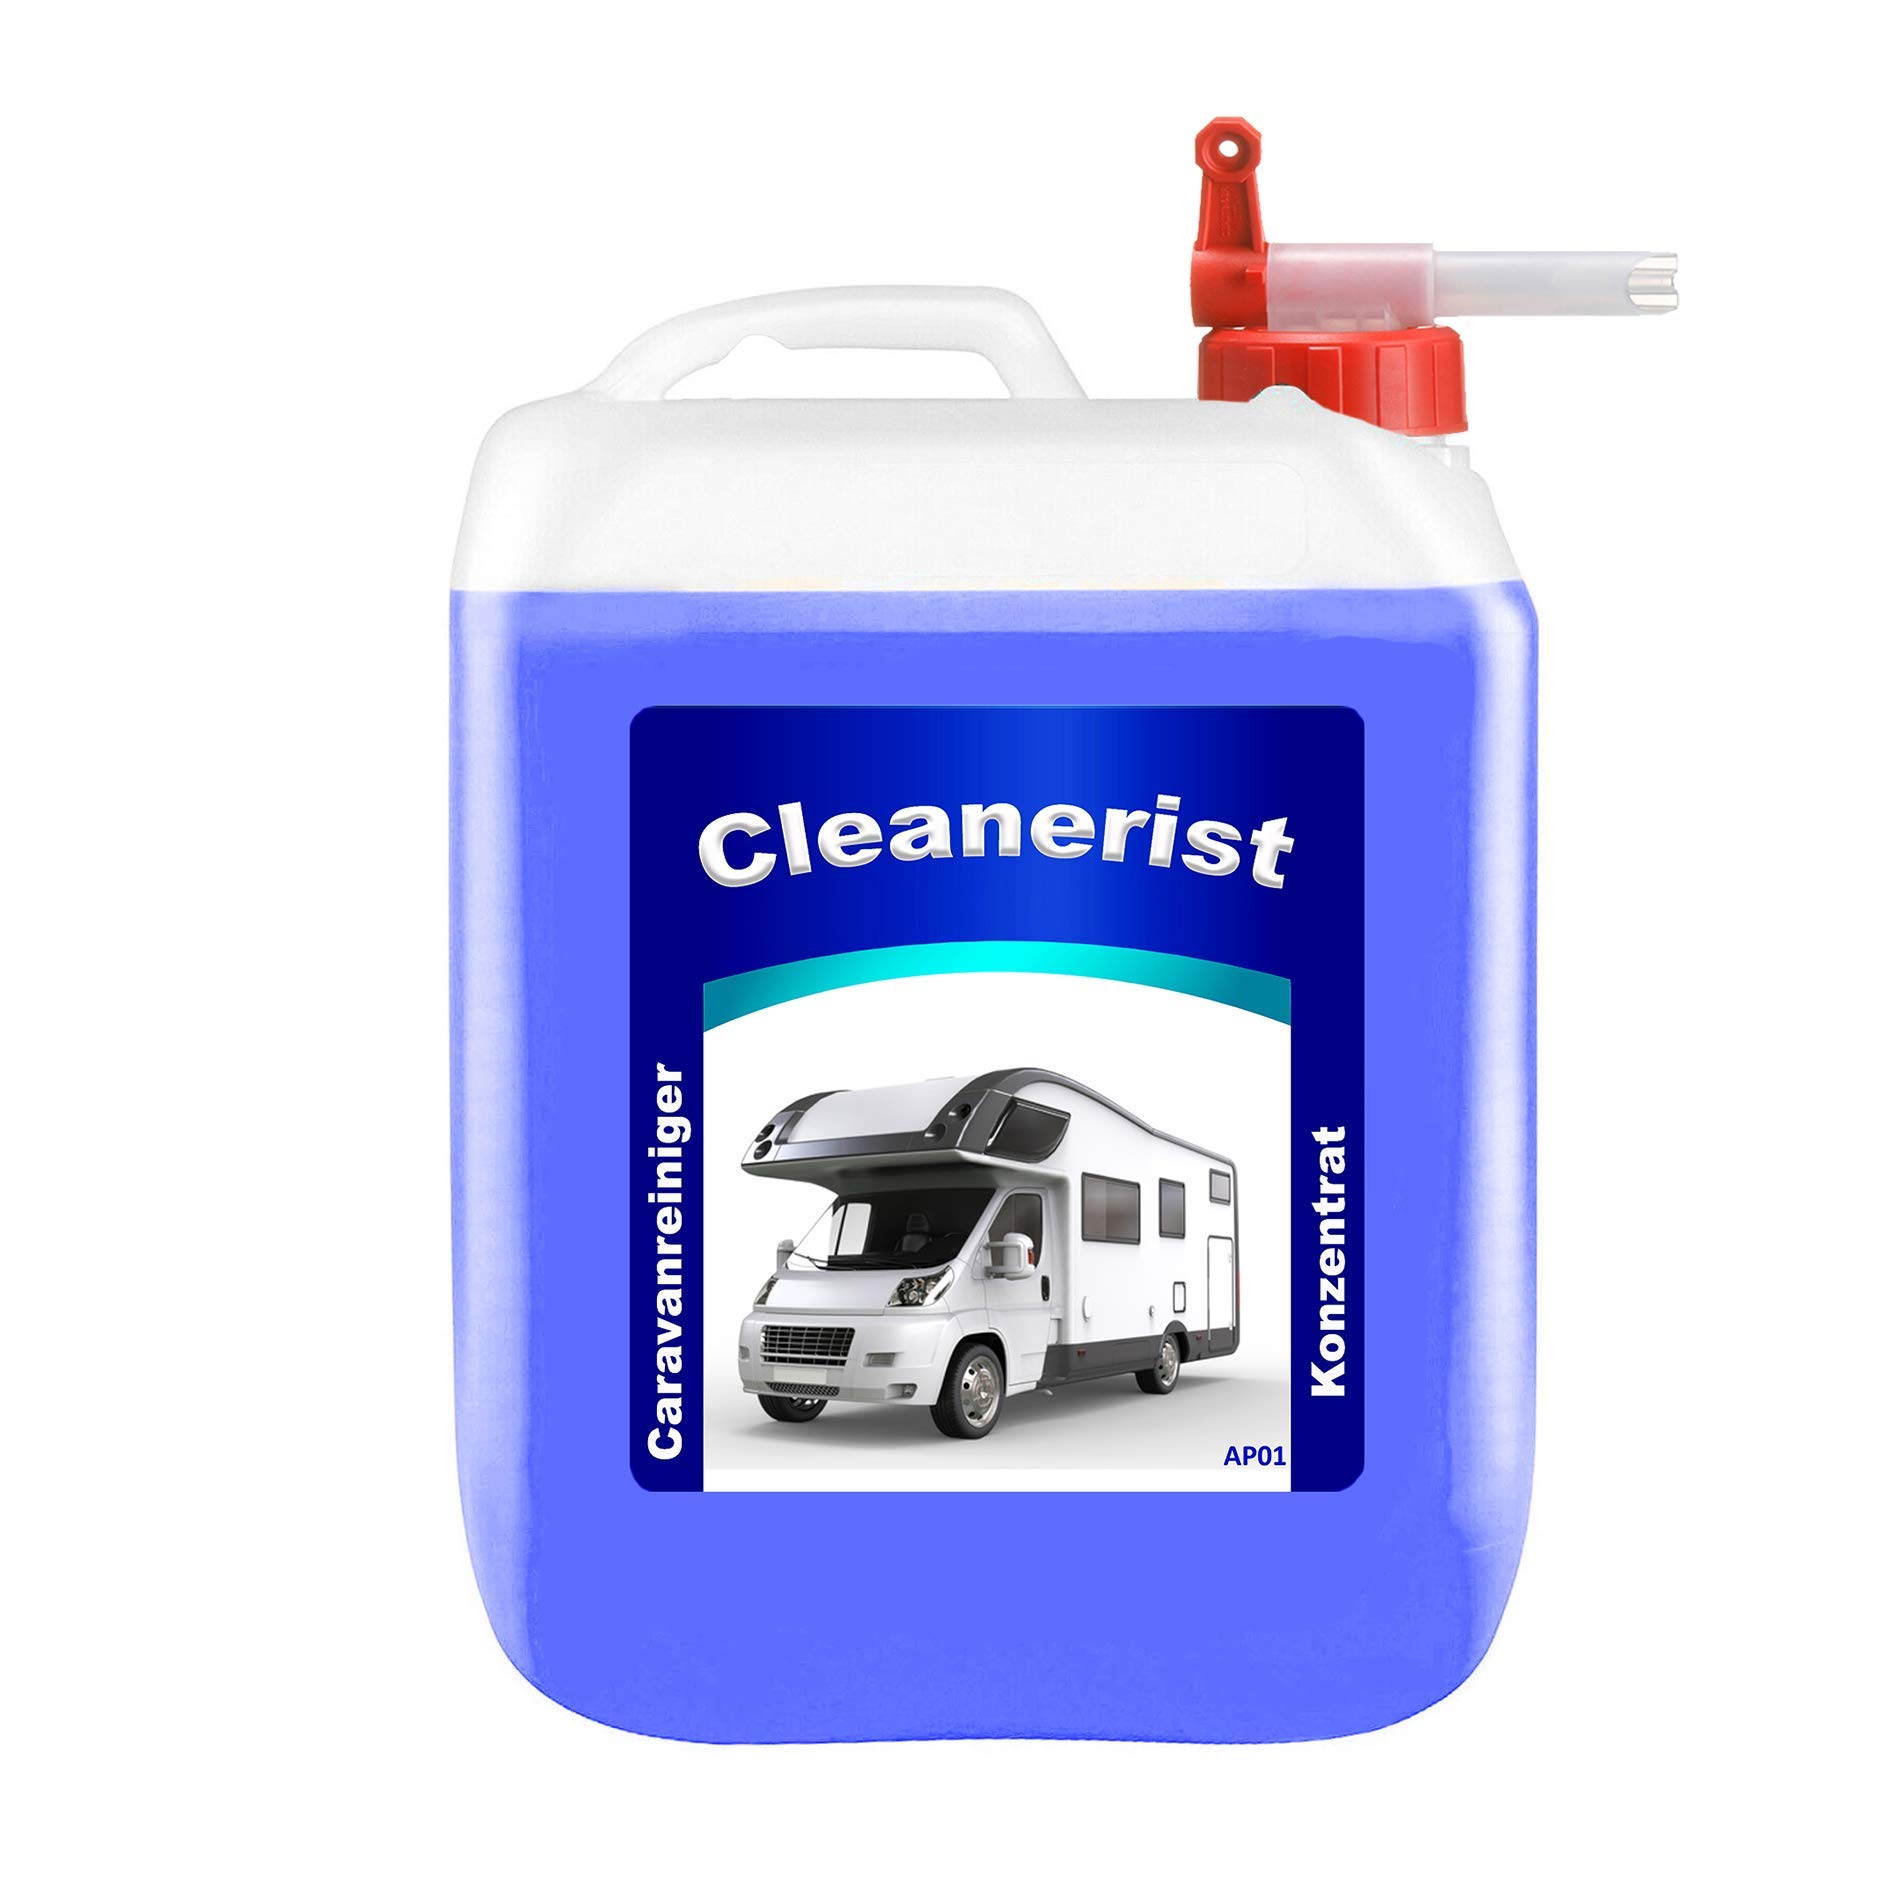 Die Seifenblase 5 Liter Cleanerist AP01 Caravanreiniger Konzentrat inkl.Auslaufhahn - spezieller Reiniger für Caravan, Wohnwagen, Wohnmobil und Reisemobil (4,78 Euro/Liter) von Die Seifenblase